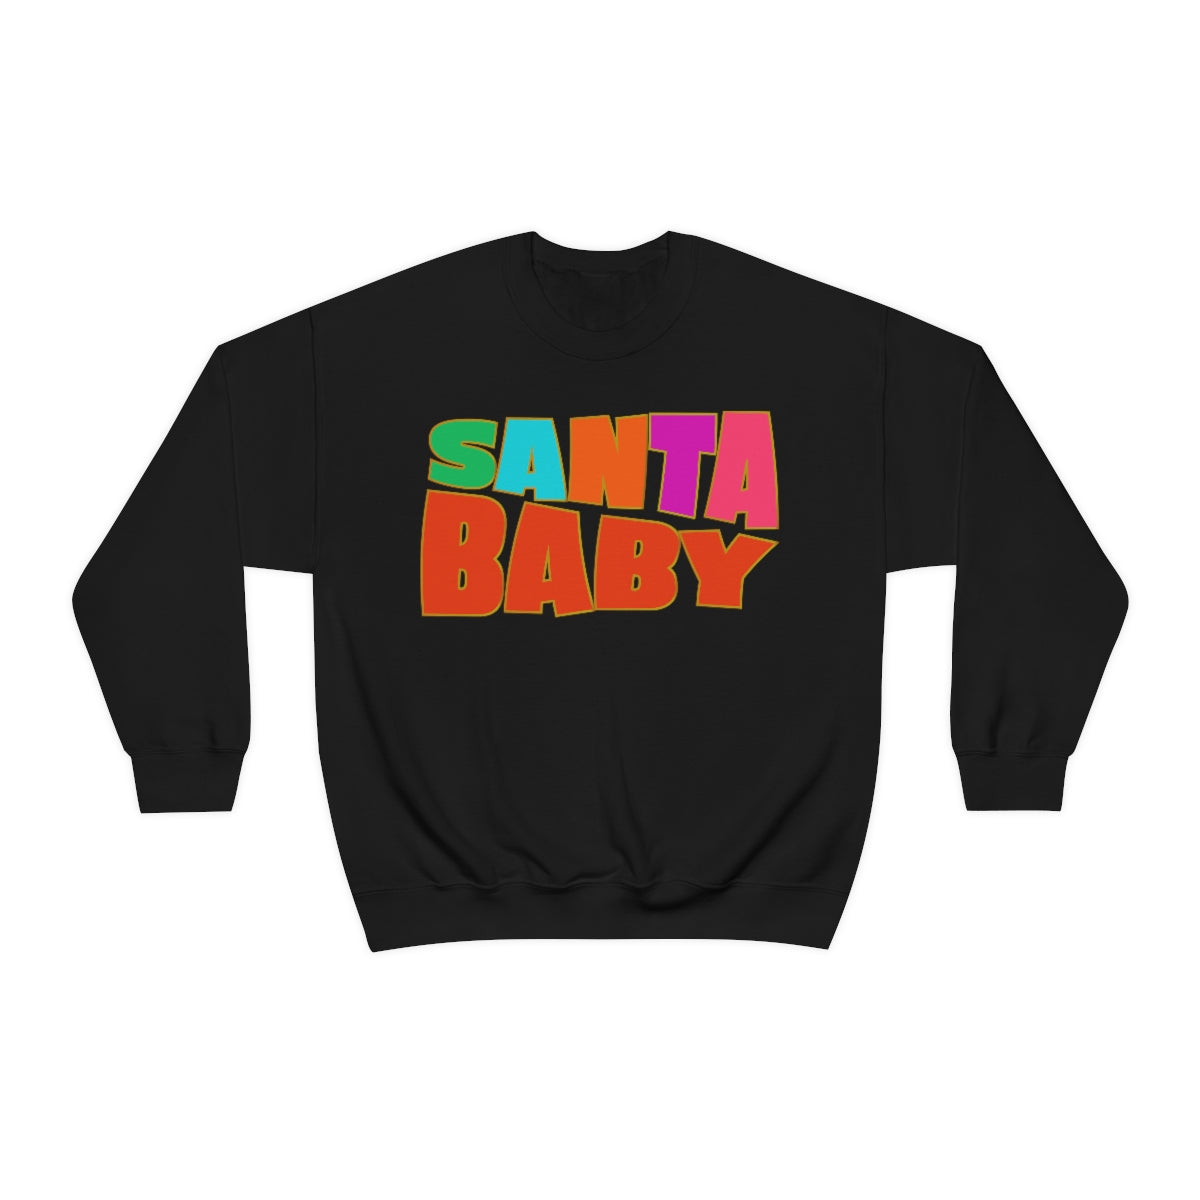 Santa Baby Sweatshirt in black